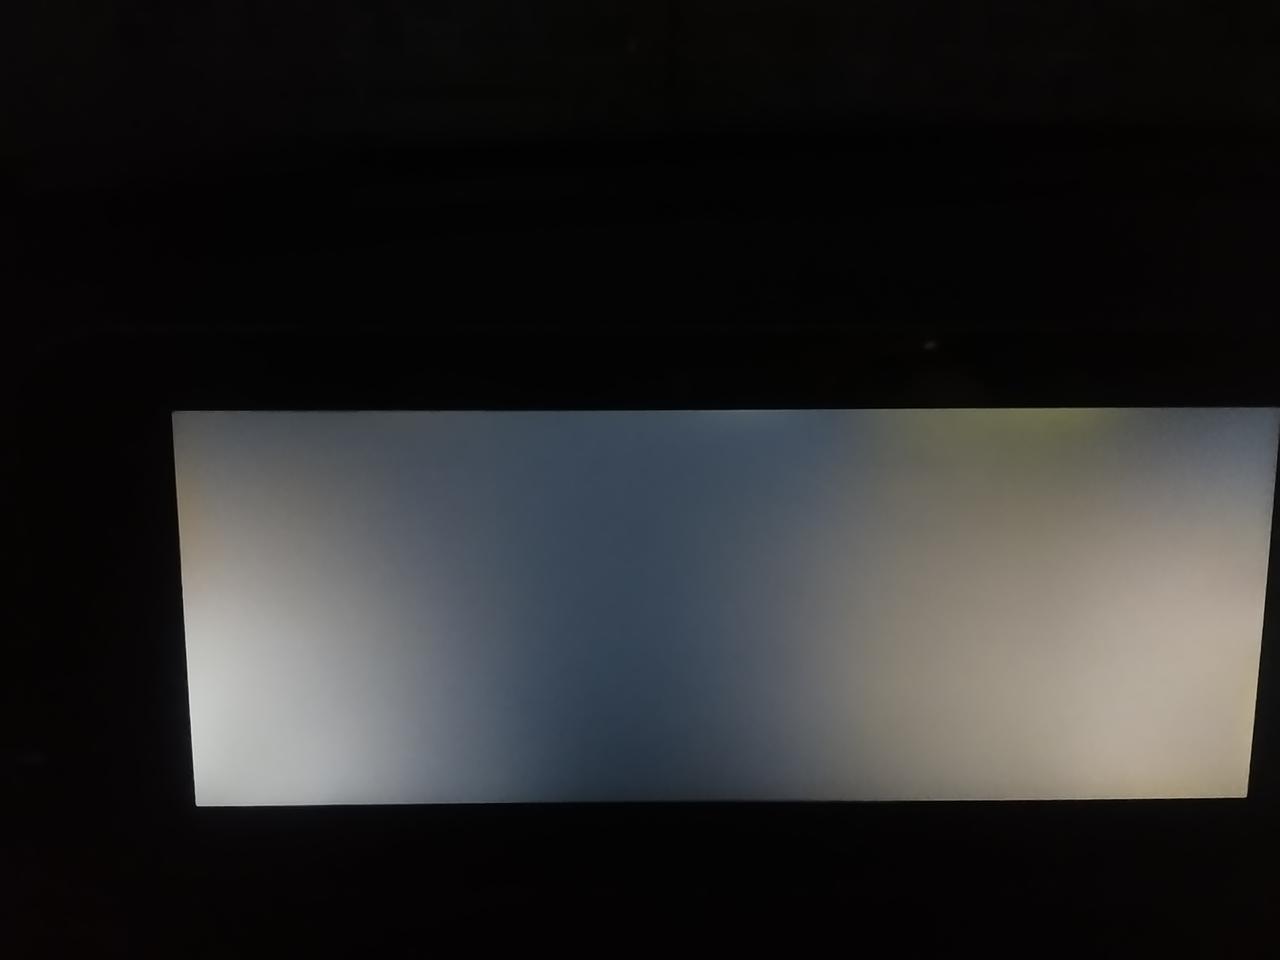 捷途x70 plus 兄弟们这车机是不是屏幕漏光？还是正常？